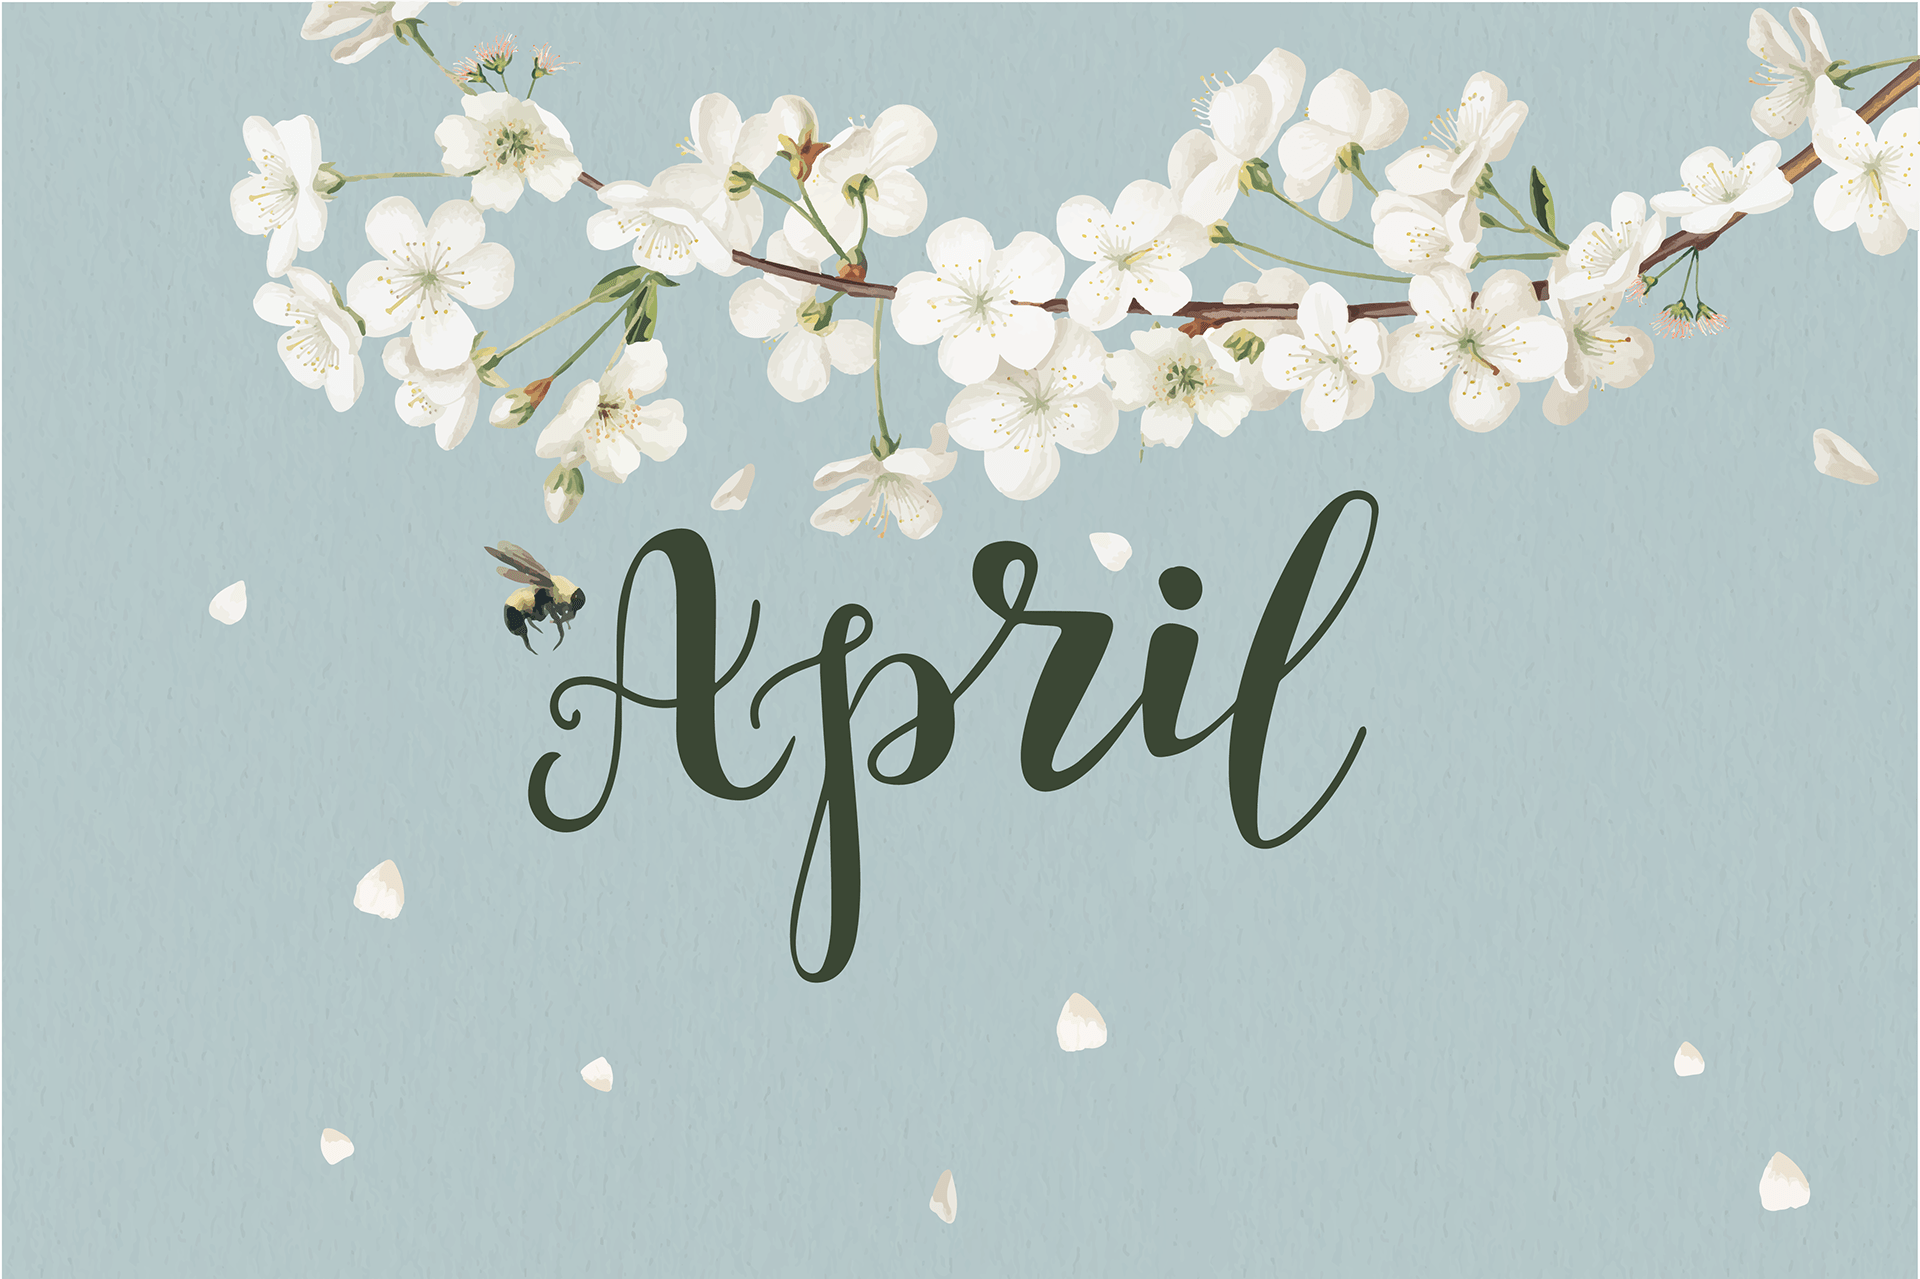 Здравствуй апрель картинки красивые. Привет апрель. Hello April картинки. Апрель картинки с надписью. Март картинки с надписью.